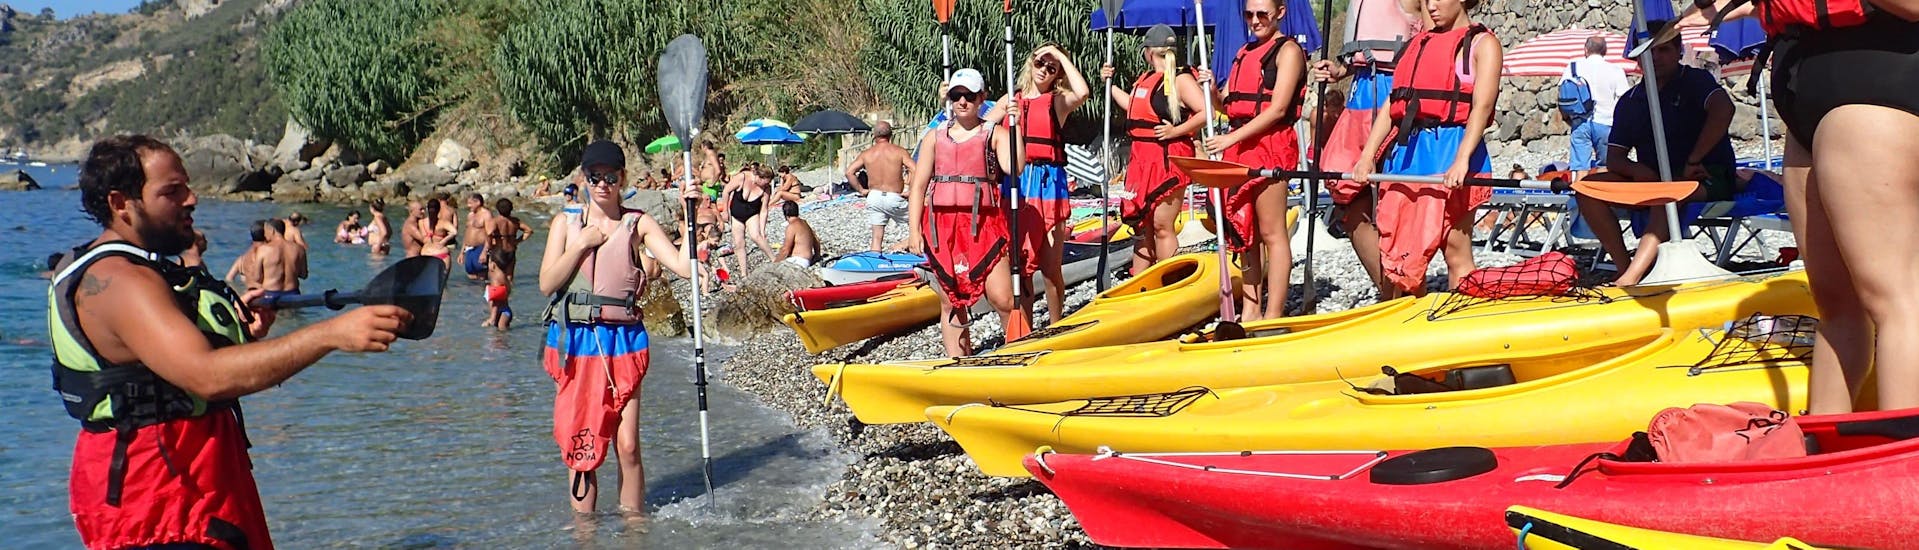 Kayak y piragua fácil en Marina del Cantone - Costa Amalfitana.